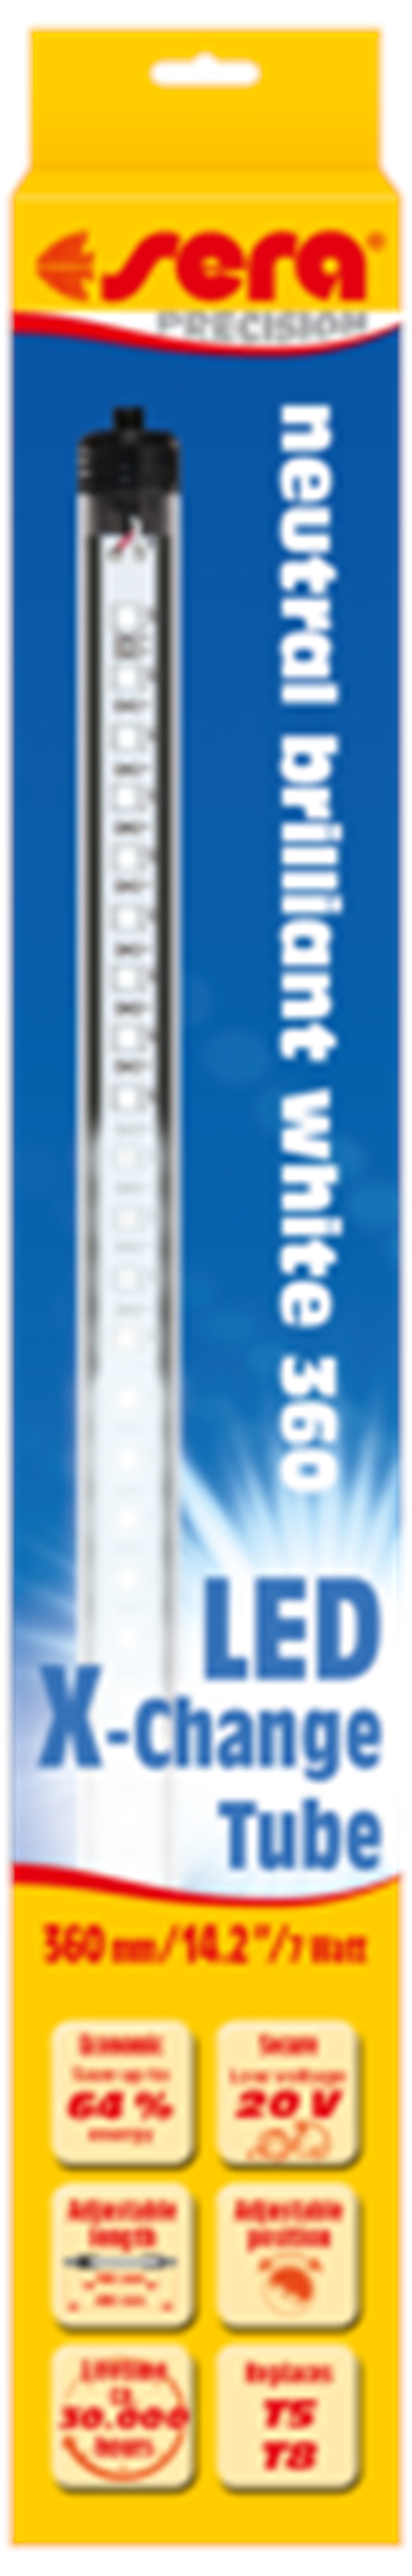 sera LED neutral brilliant white 360 mm / 7 W